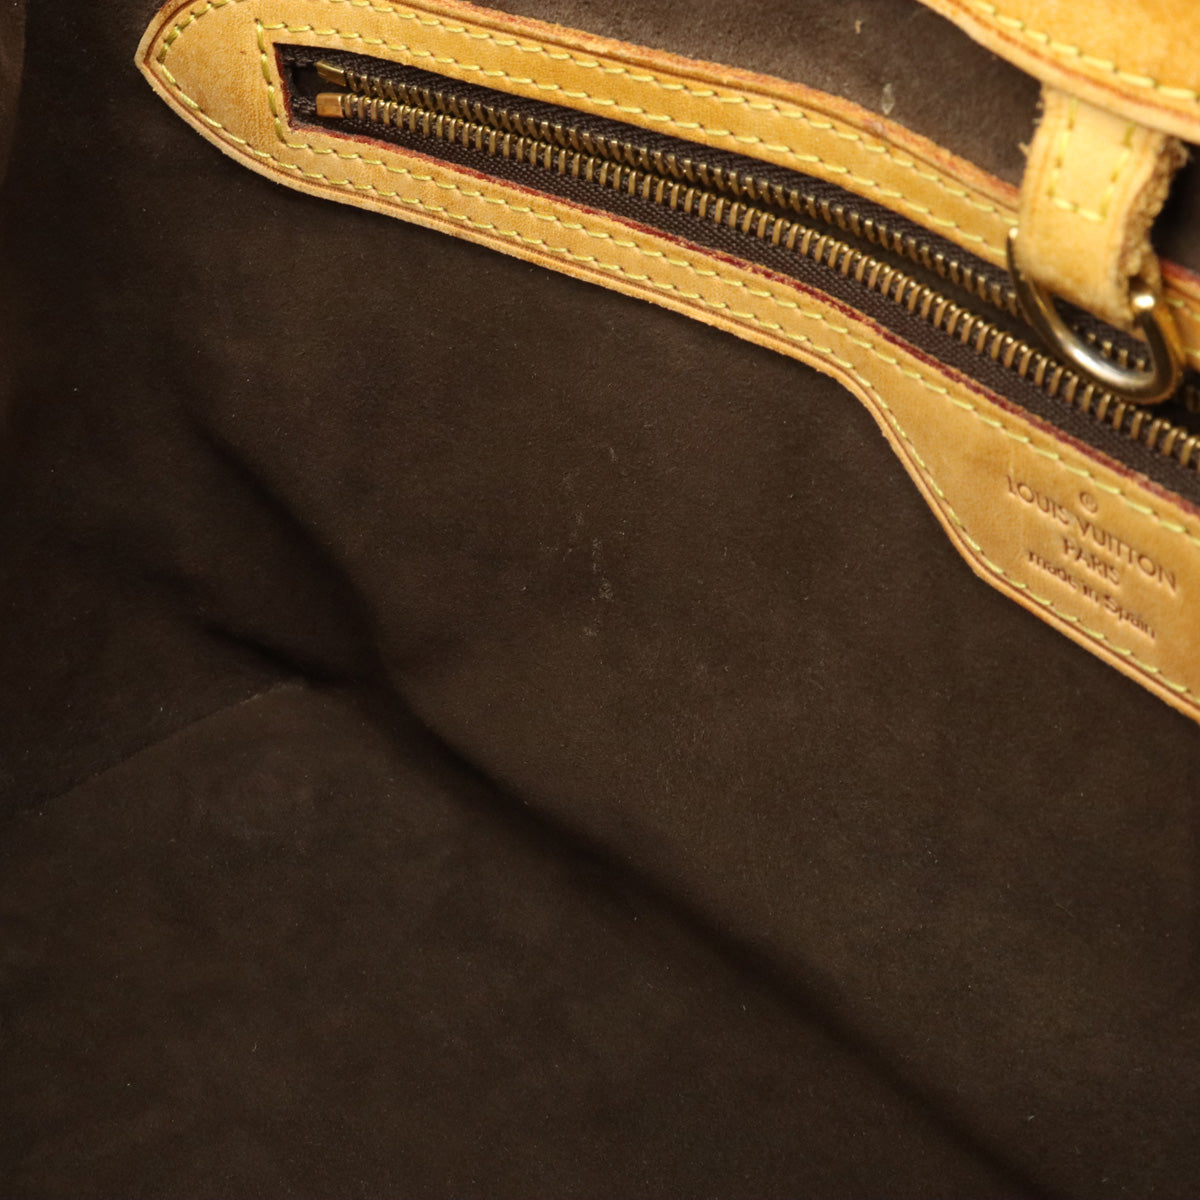 Louis Vuitton Wilshire PM M45643 Monogram Canvas Tote Handbag Brown